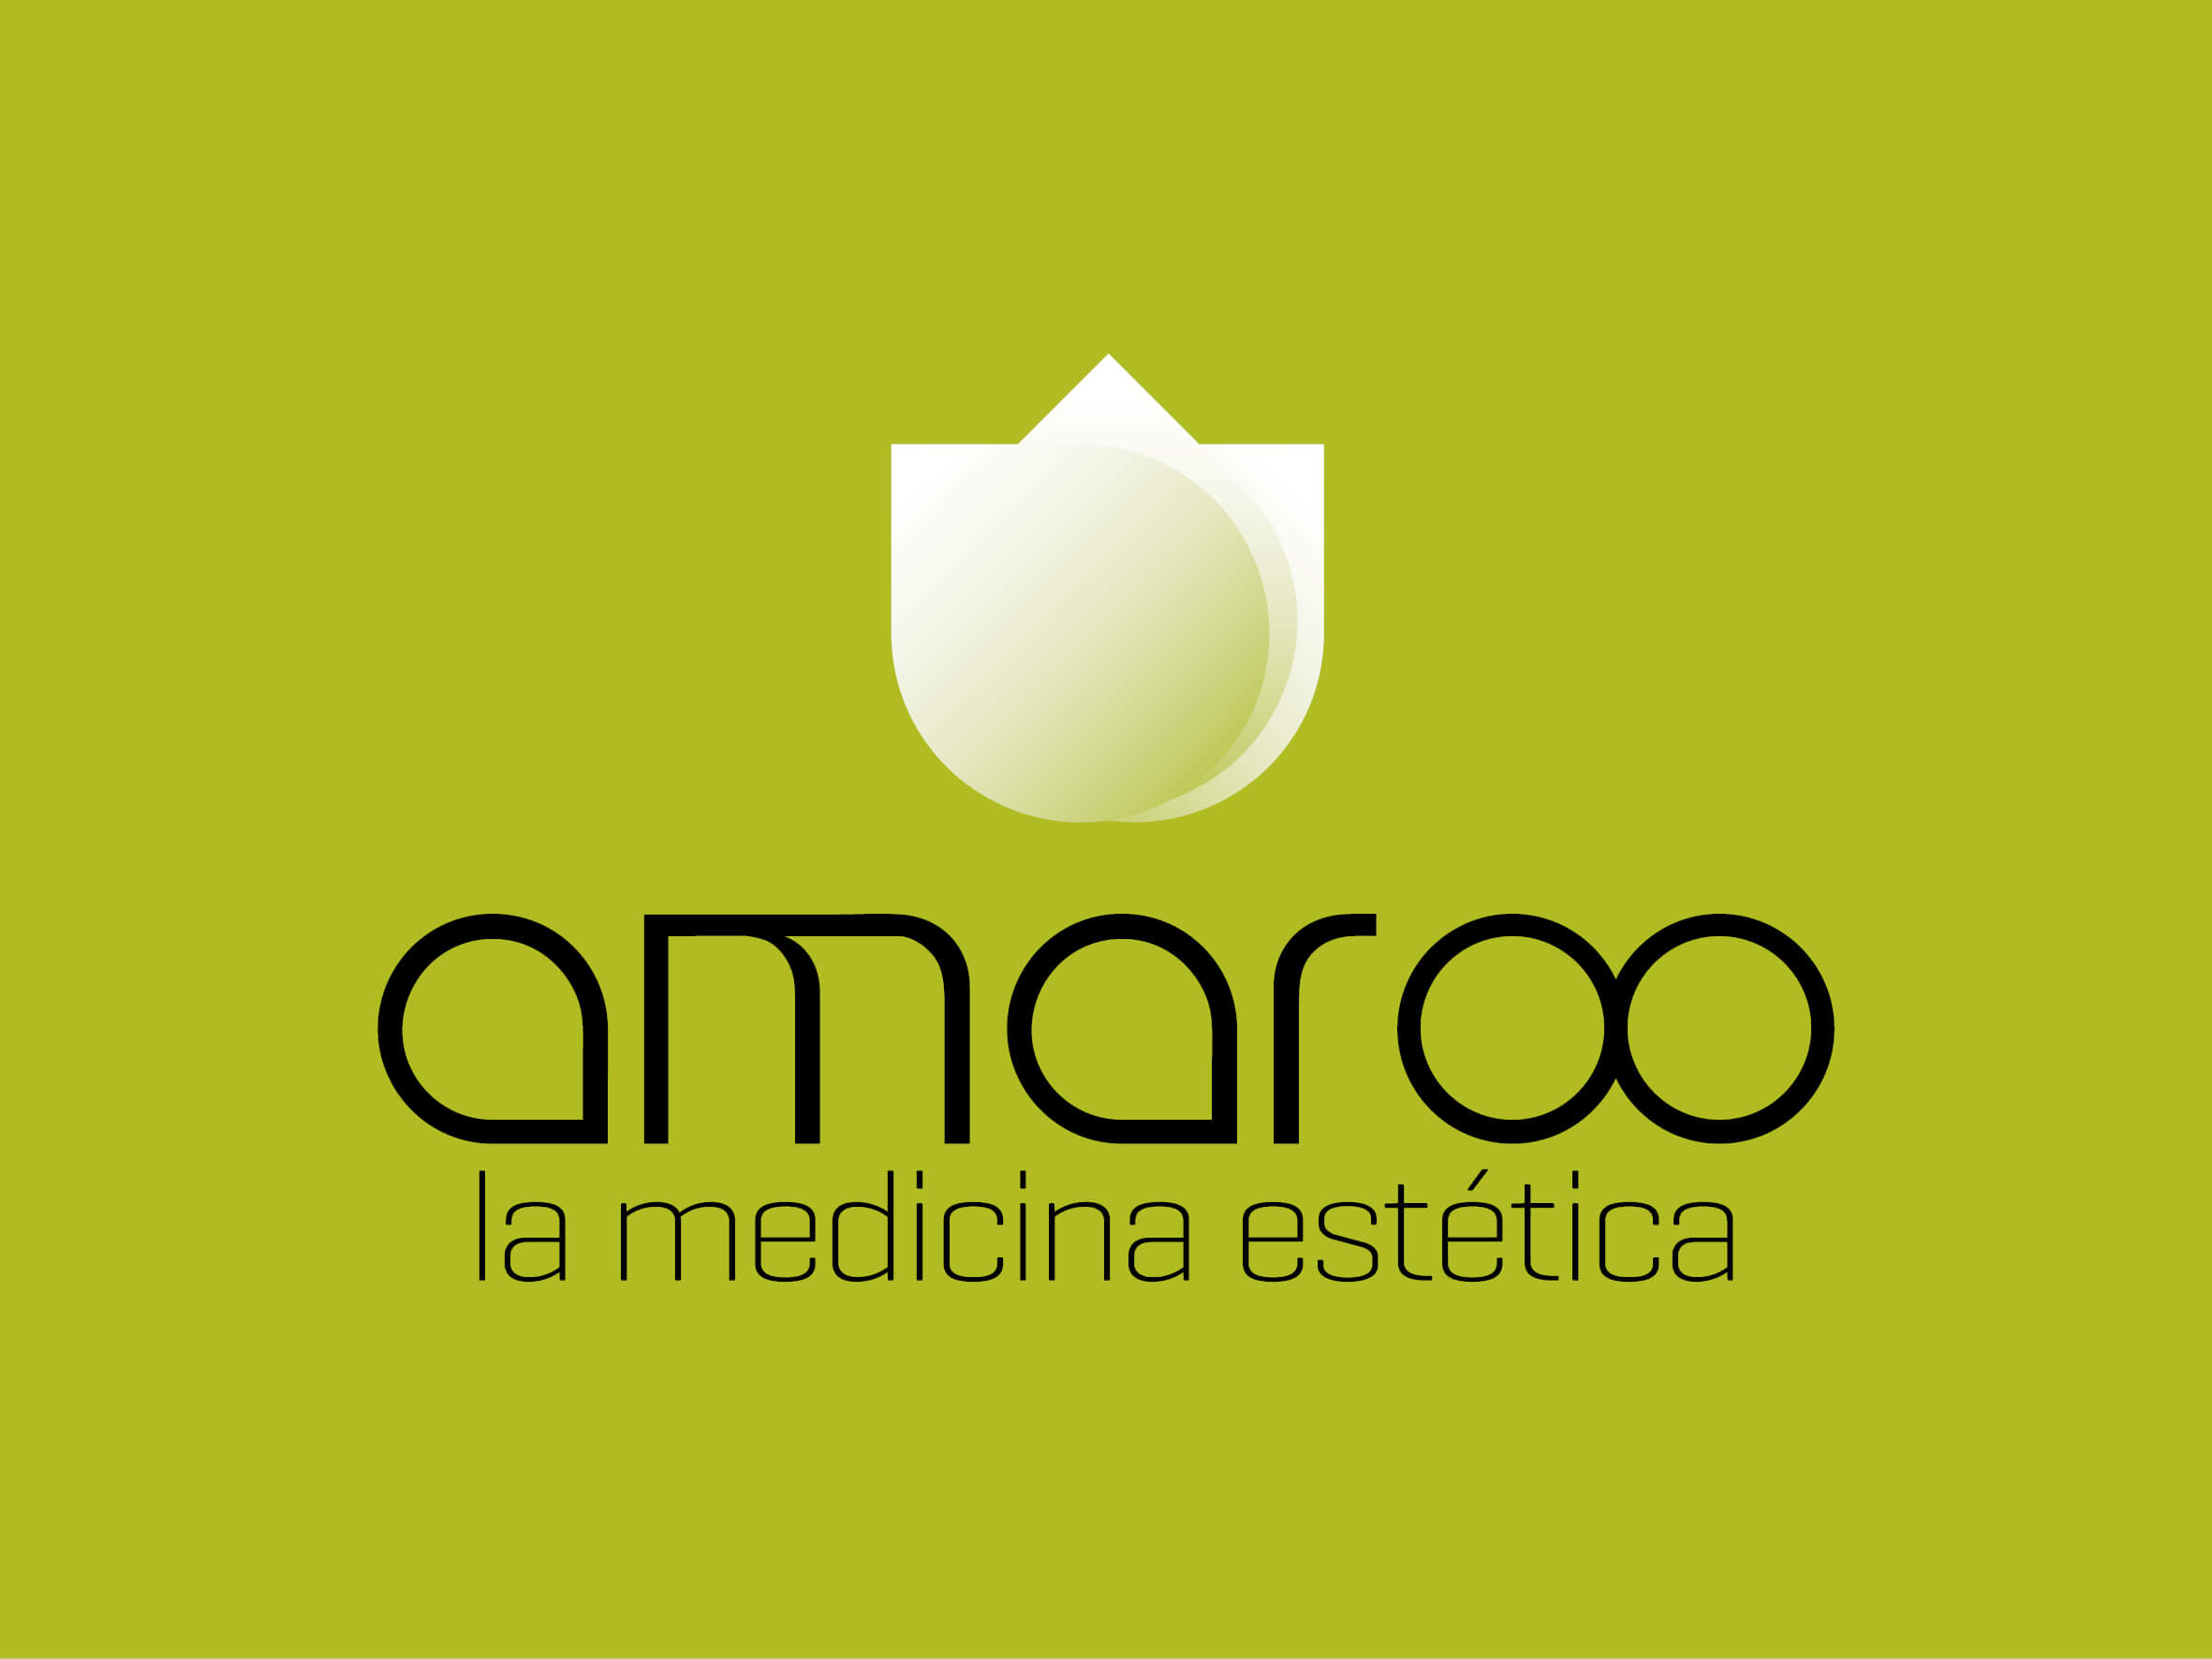 Amaroo Medicina Estetica